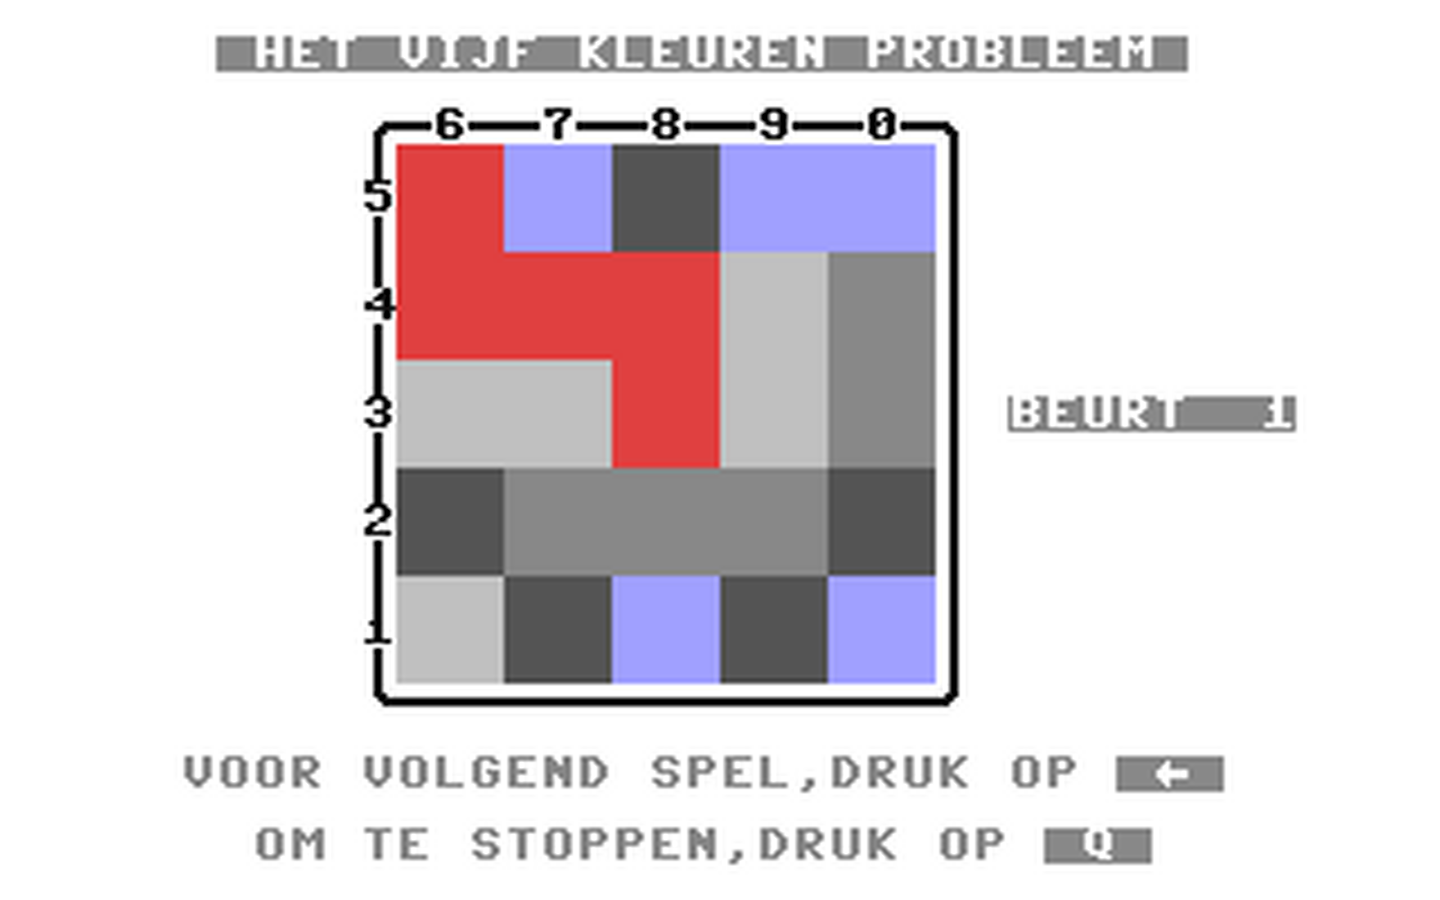 C64 GameBase 5-Kleuren_Probleem,_Het Commodore_Info 1989